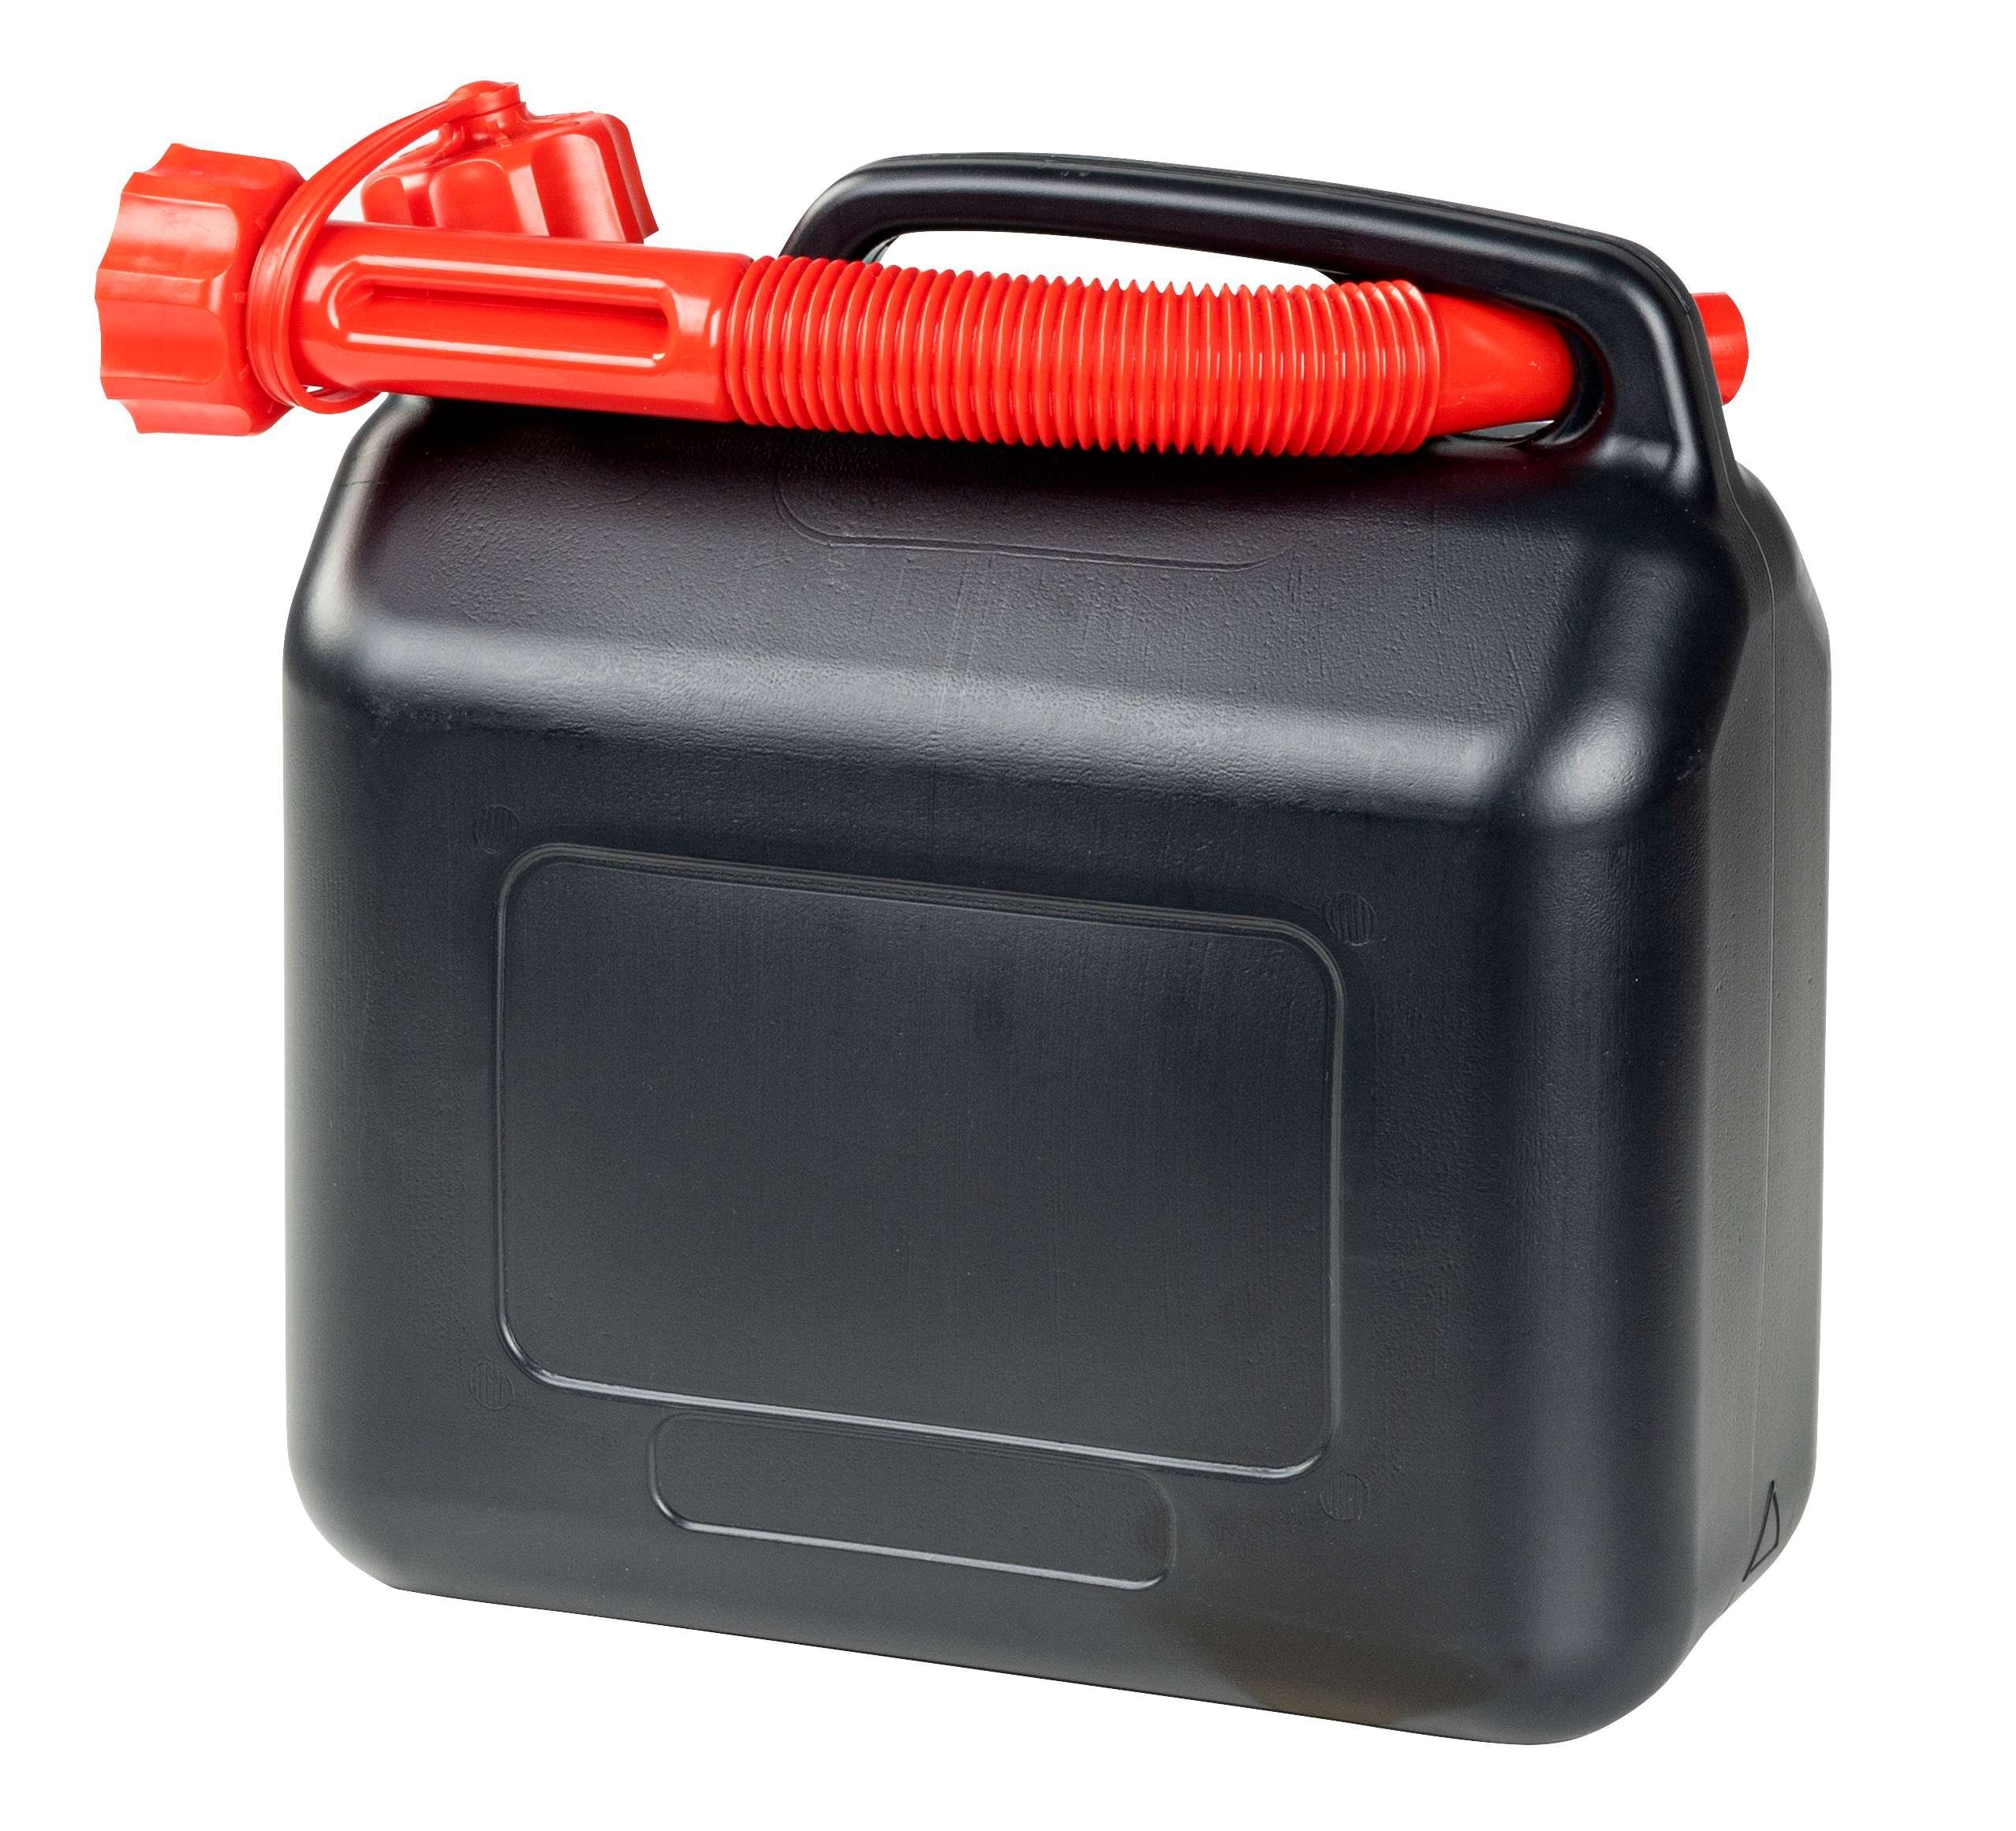 Benzinkanister 5 Liter, Krafstoffkanister UN-geprüft, Reservekanister mit Sicherheitsverschluss schwarz/rot